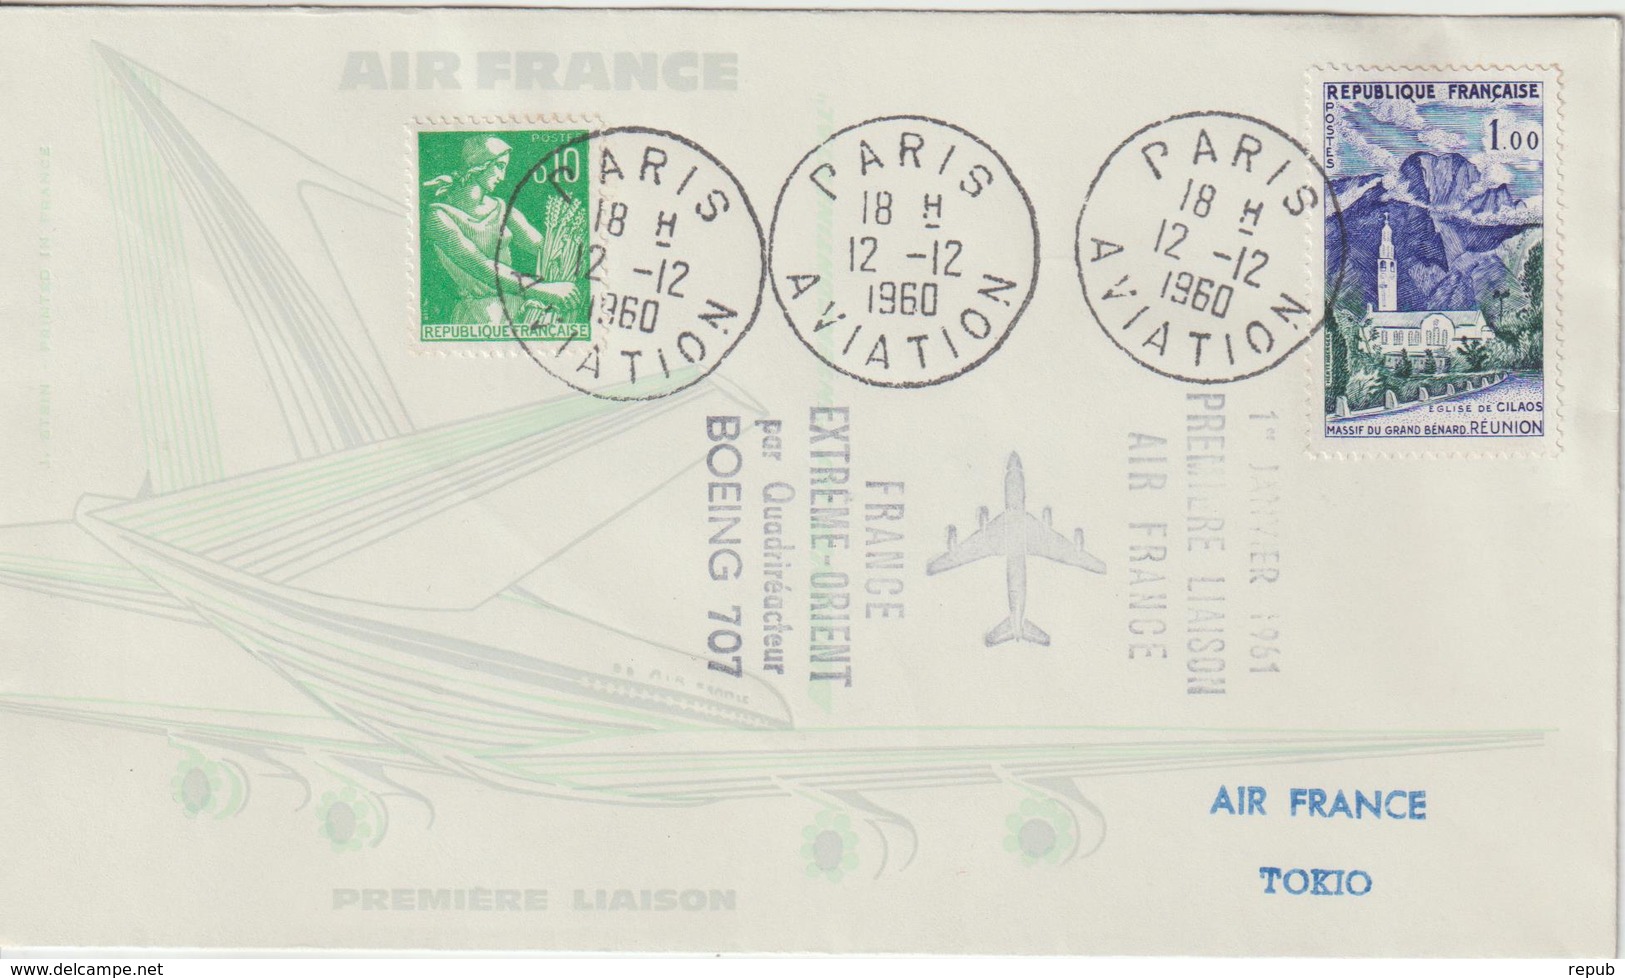 France 1960 Première Liaison Air France Paris Tokyo - Premiers Vols